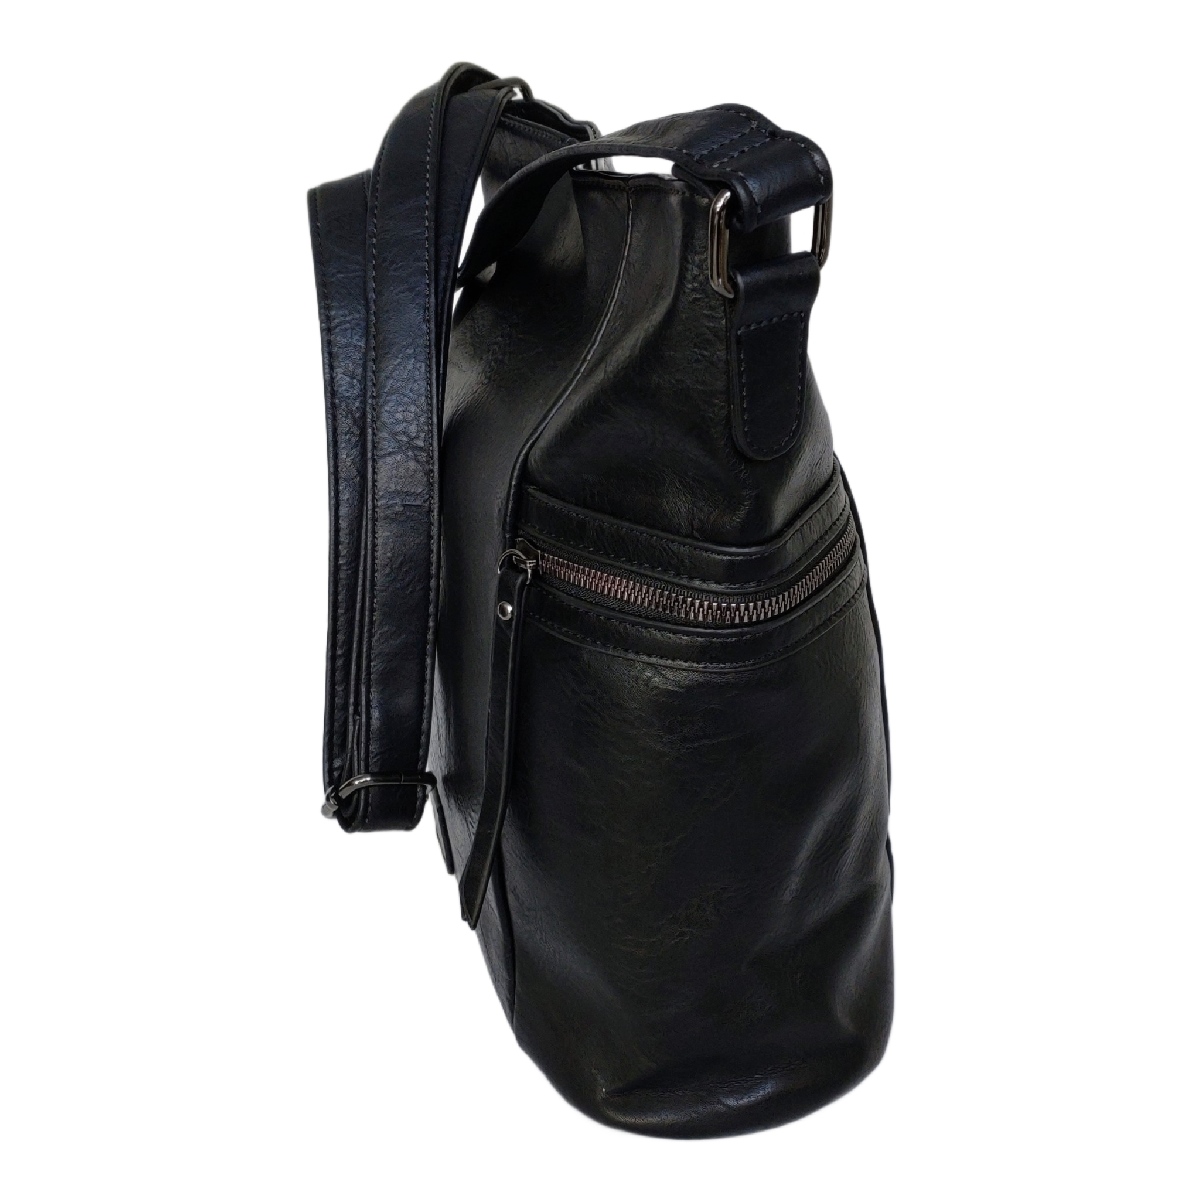 Γυναικεία Τσάντα 9039-103.B Ώμου-Χιαστί, Μαύρο χρώμα.